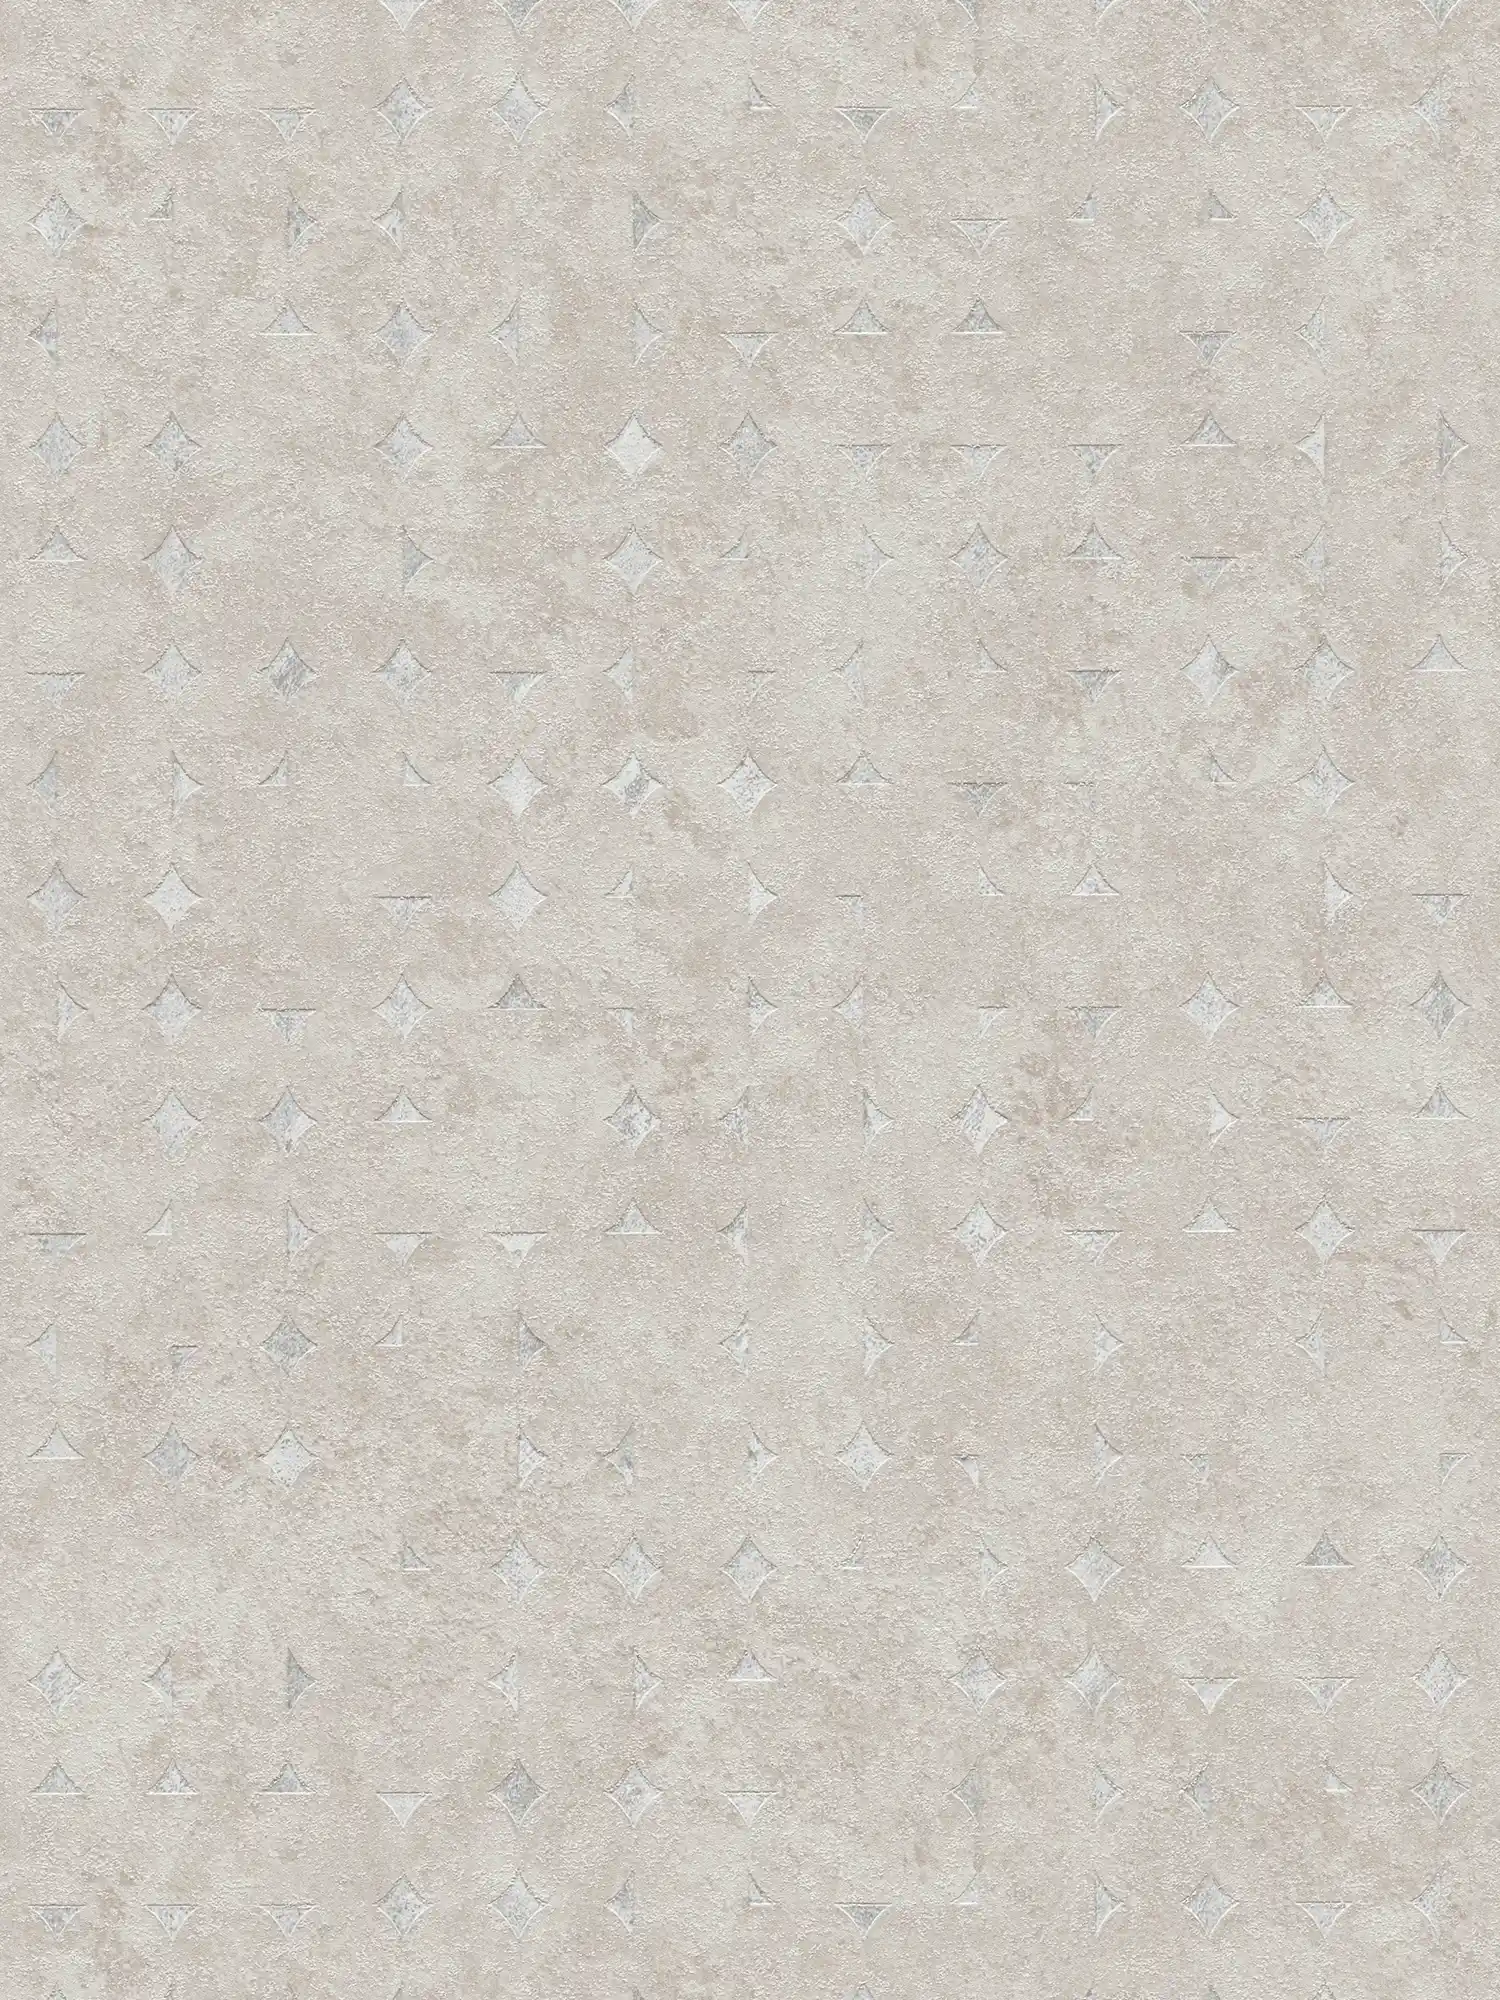 Carta da parati non tessuta con forme geometriche, leggermente lucida - beige, argento
